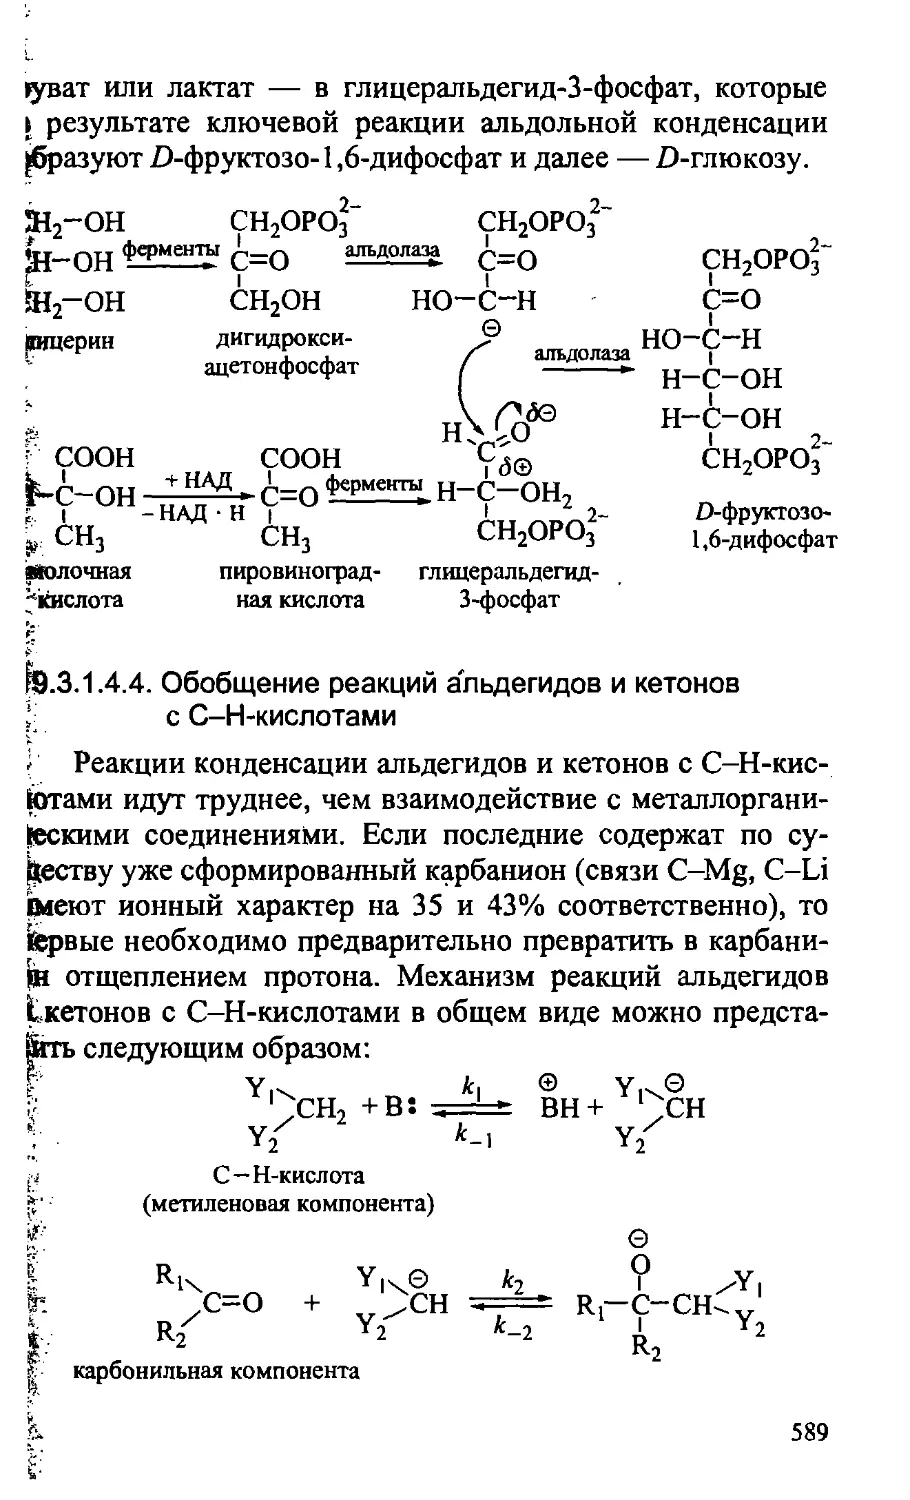 {589} 19.3.1.4.4. Обобщение реакций альдегидов и кетонов с С-Н-кислотами